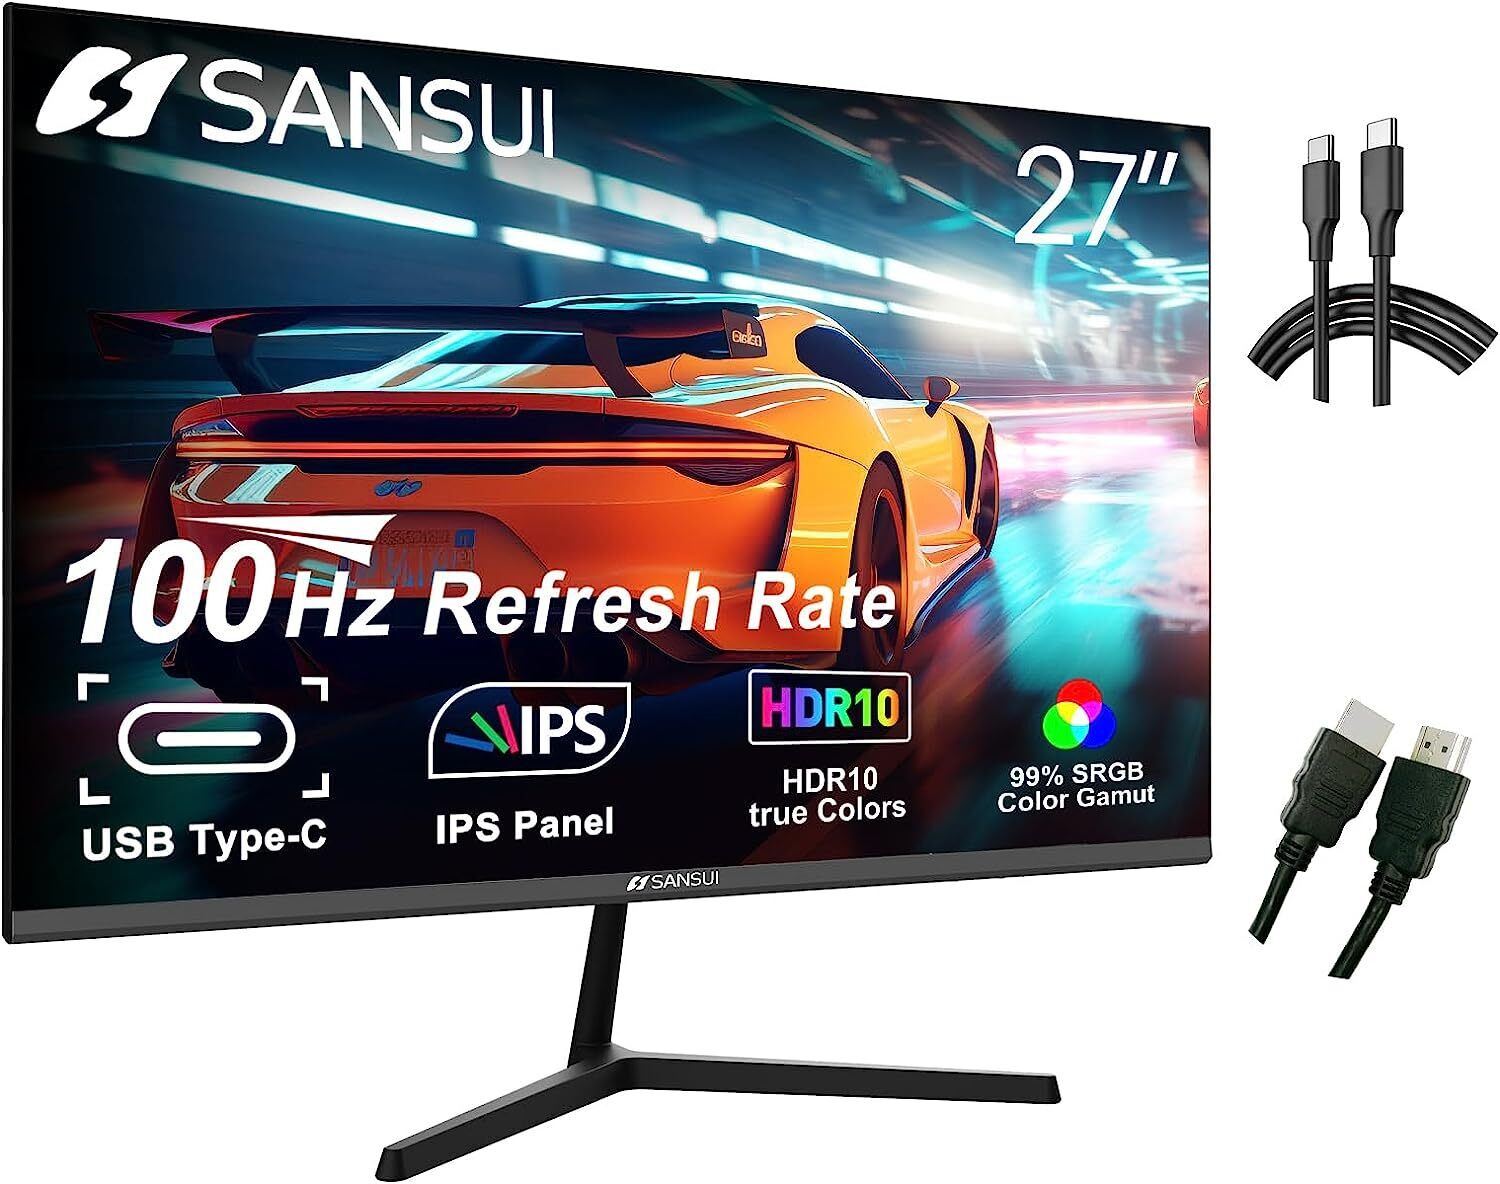 SANSUI Computer Monitors 27 inch 100Hz IPS USB Type-C FHD 1080P HDR10 ES-27X3